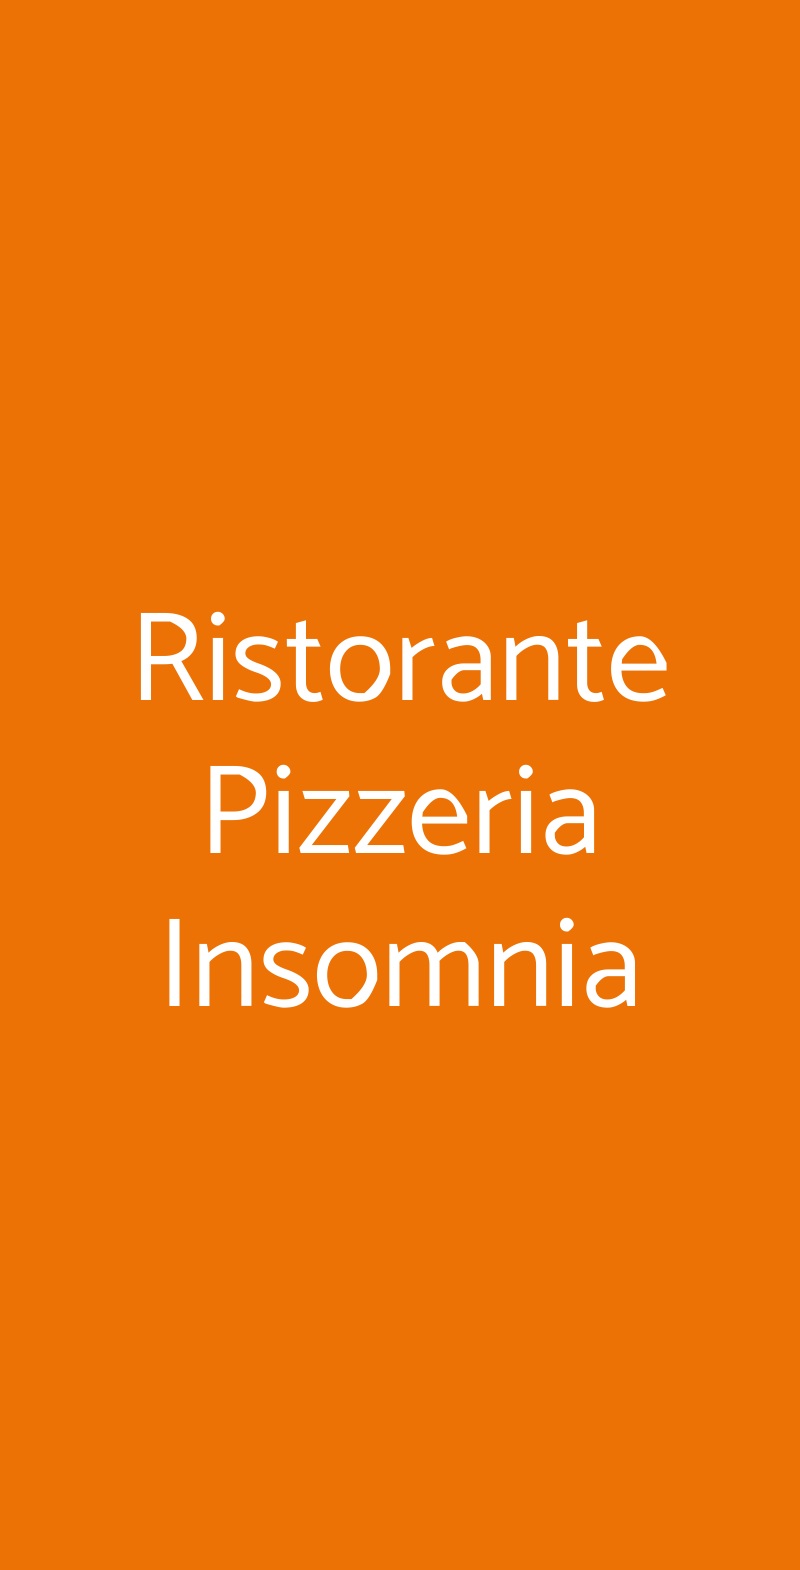 Ristorante Pizzeria Insomnia Roma menù 1 pagina